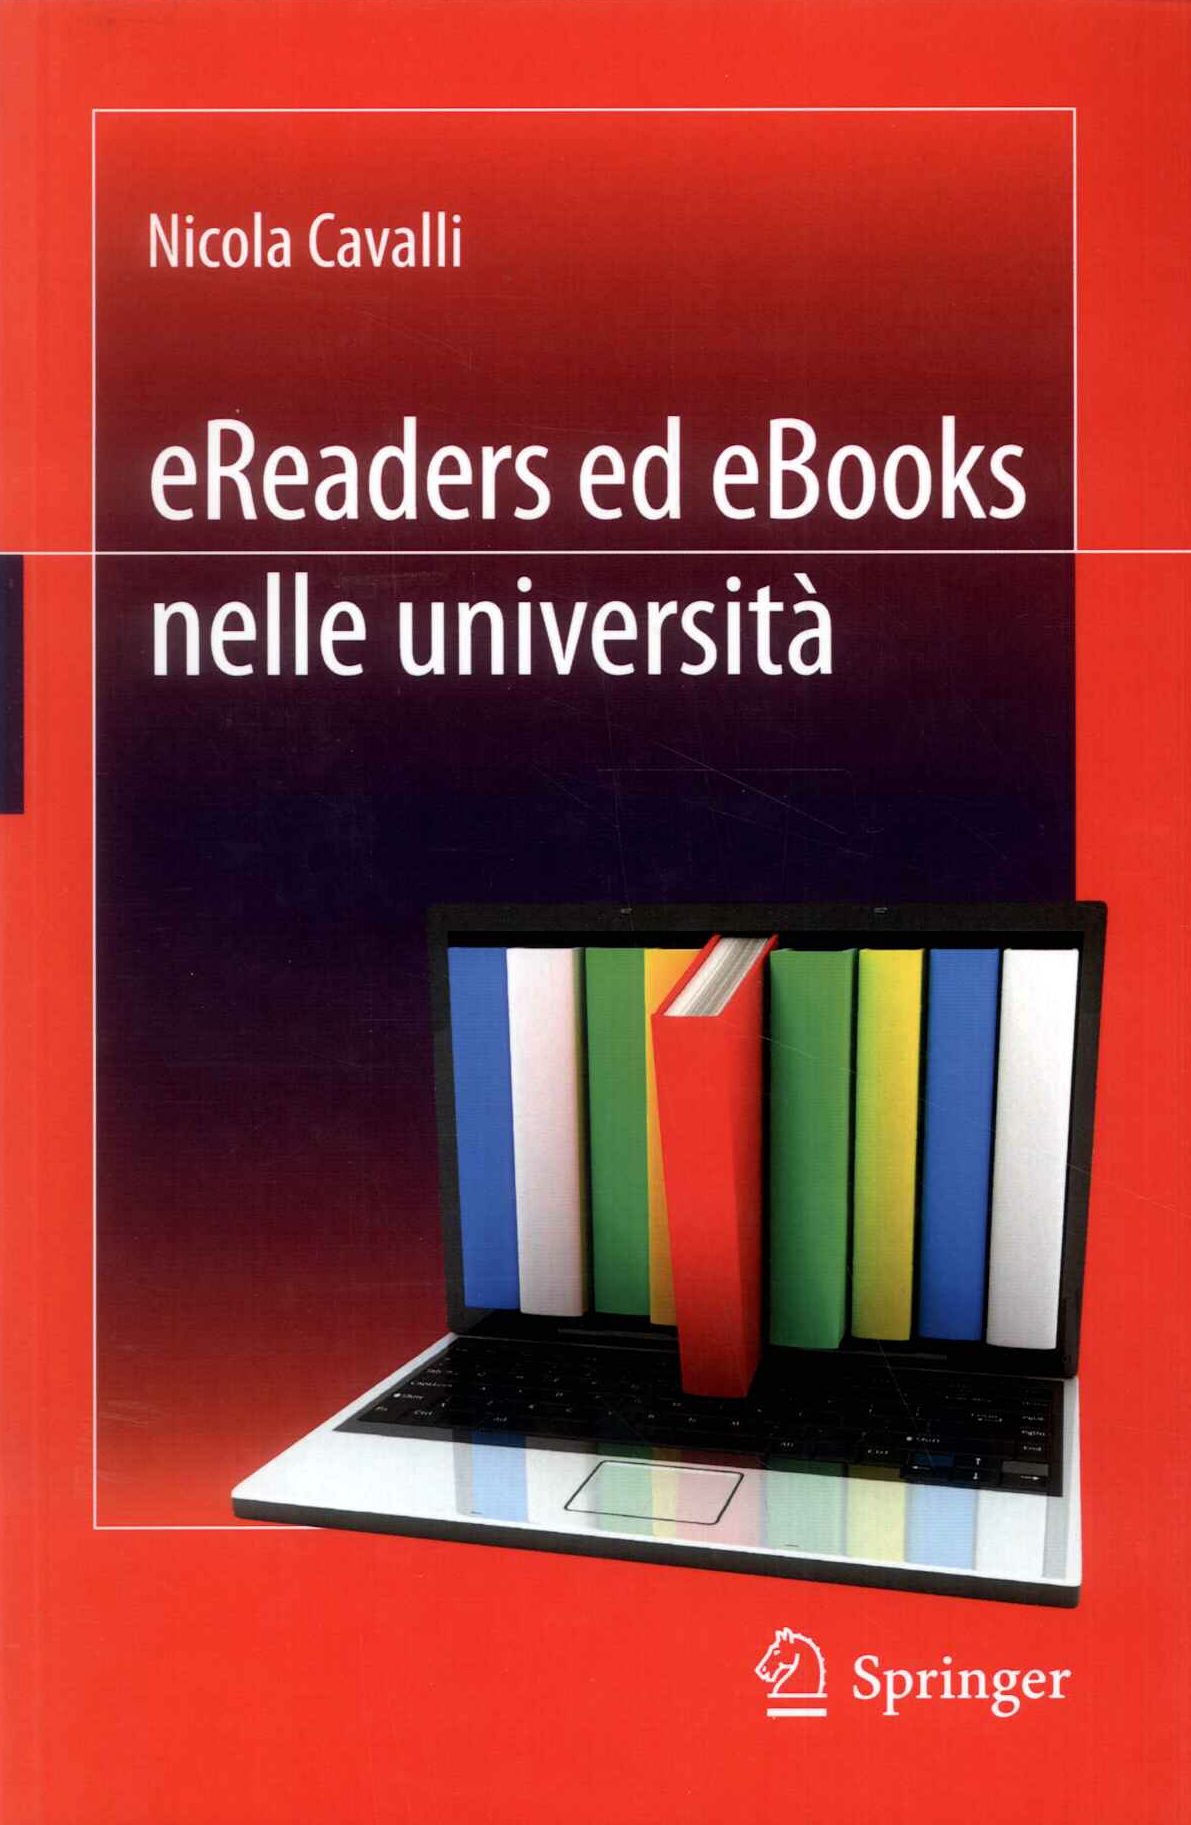 Ereaders ed eBooks nelle università